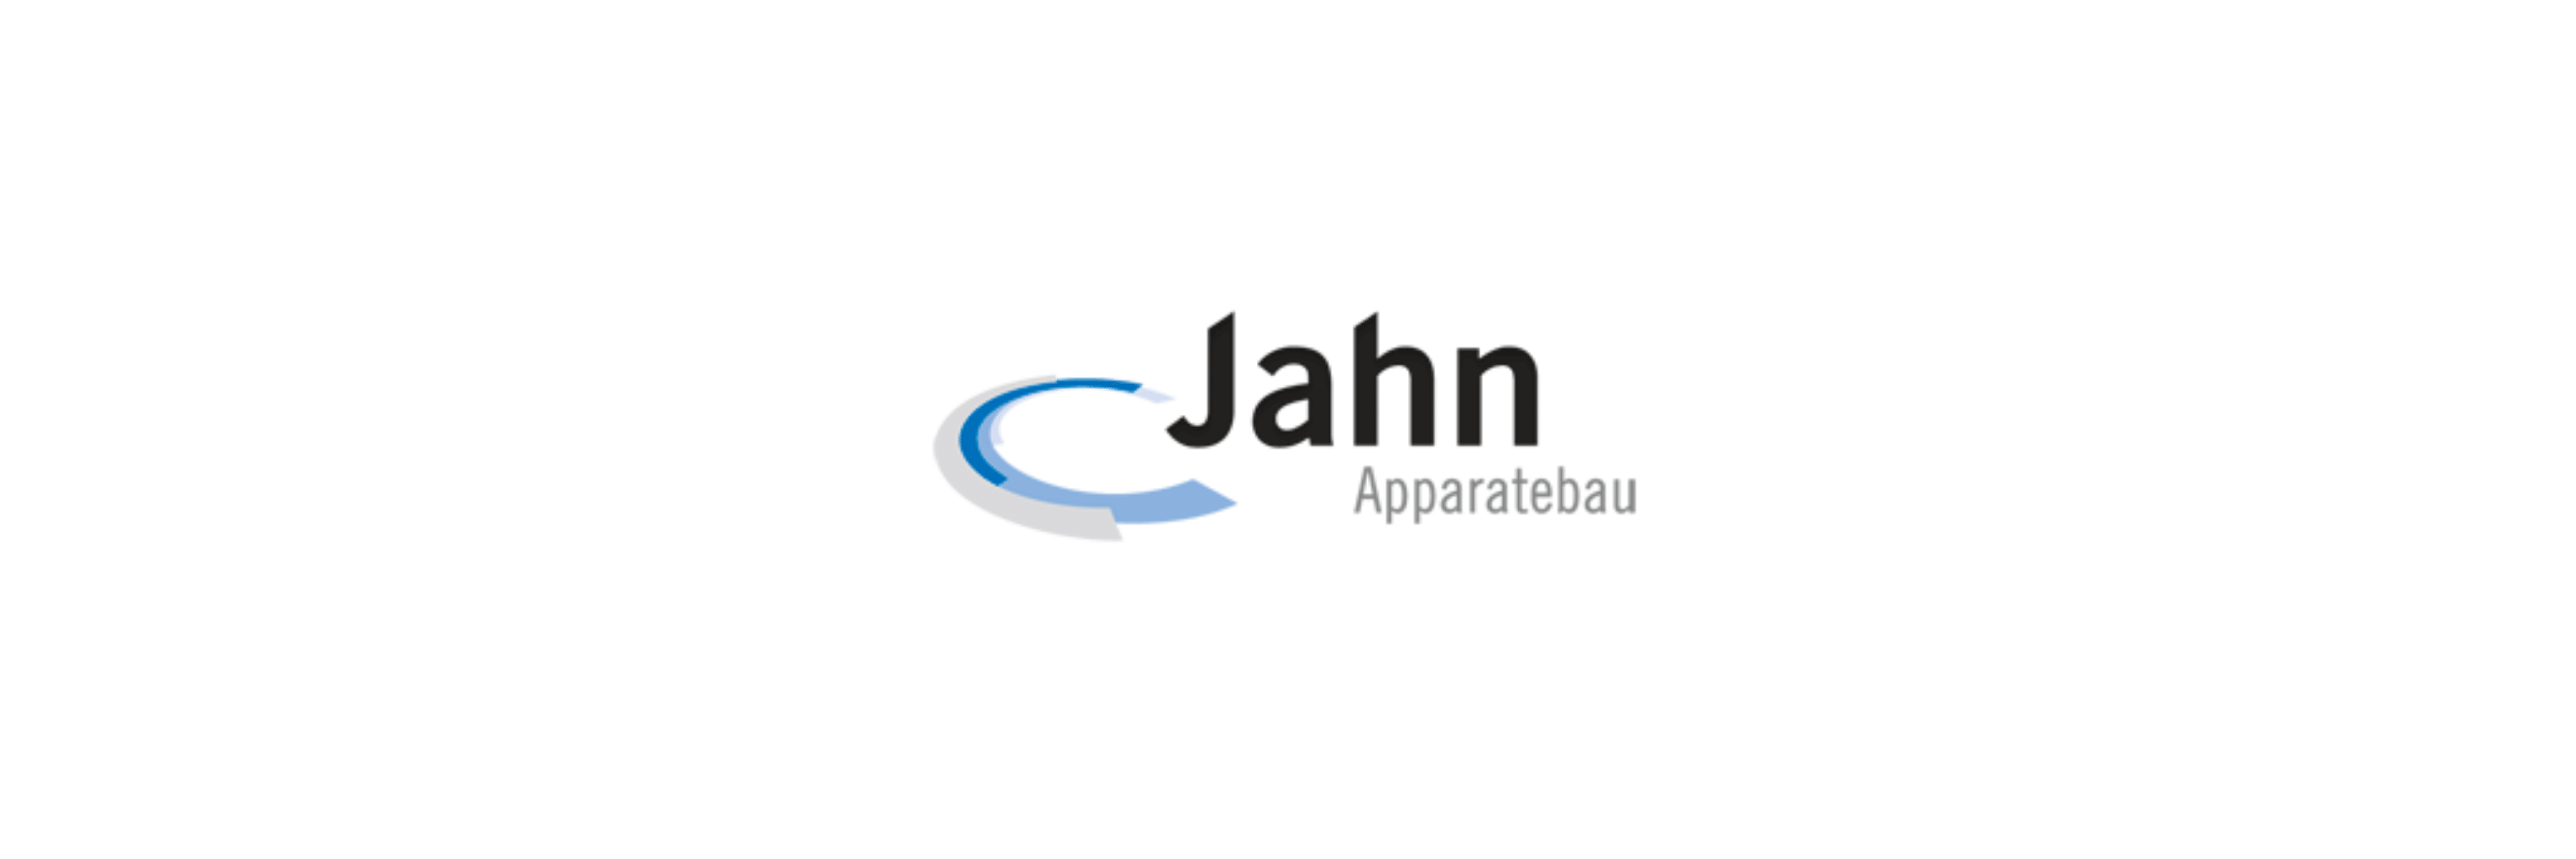 Jahn Apparatebau - Klenk Maschinenhandel